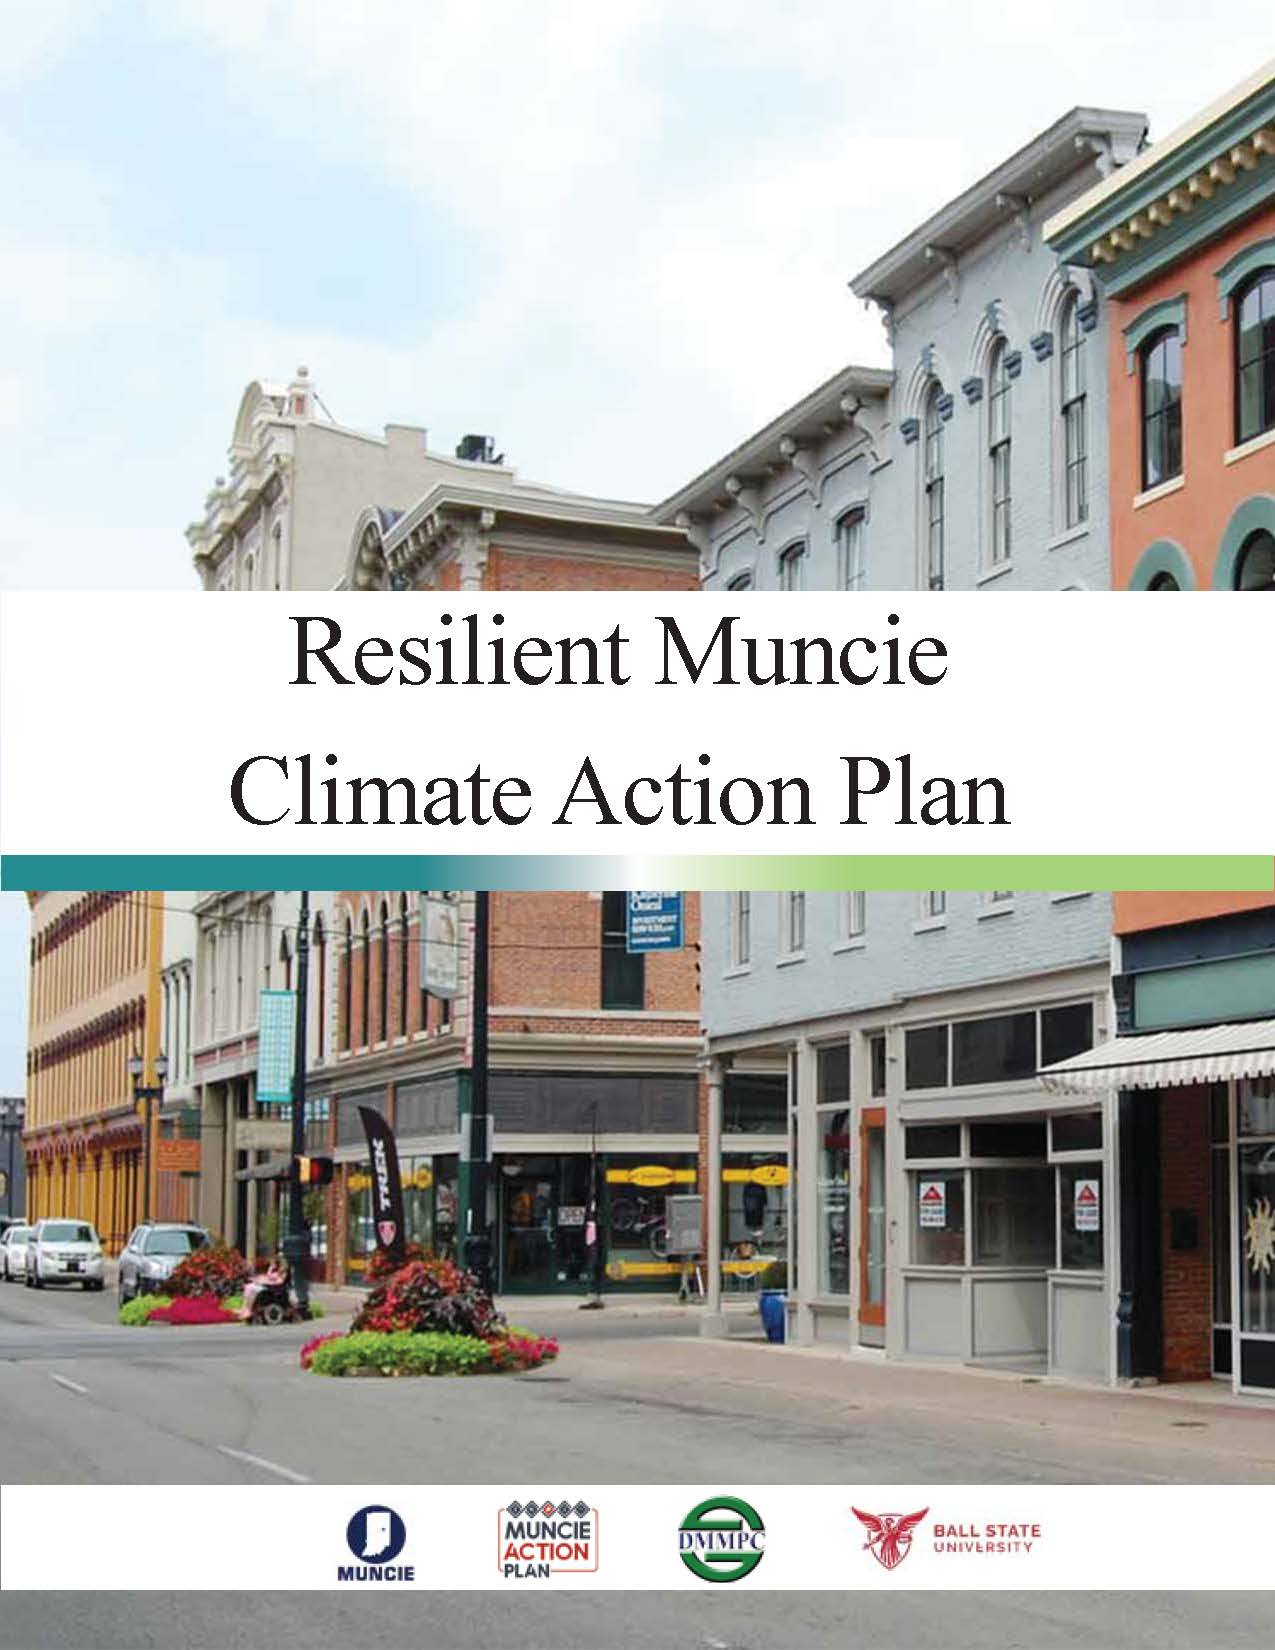 Muncie CLimate Action Plan